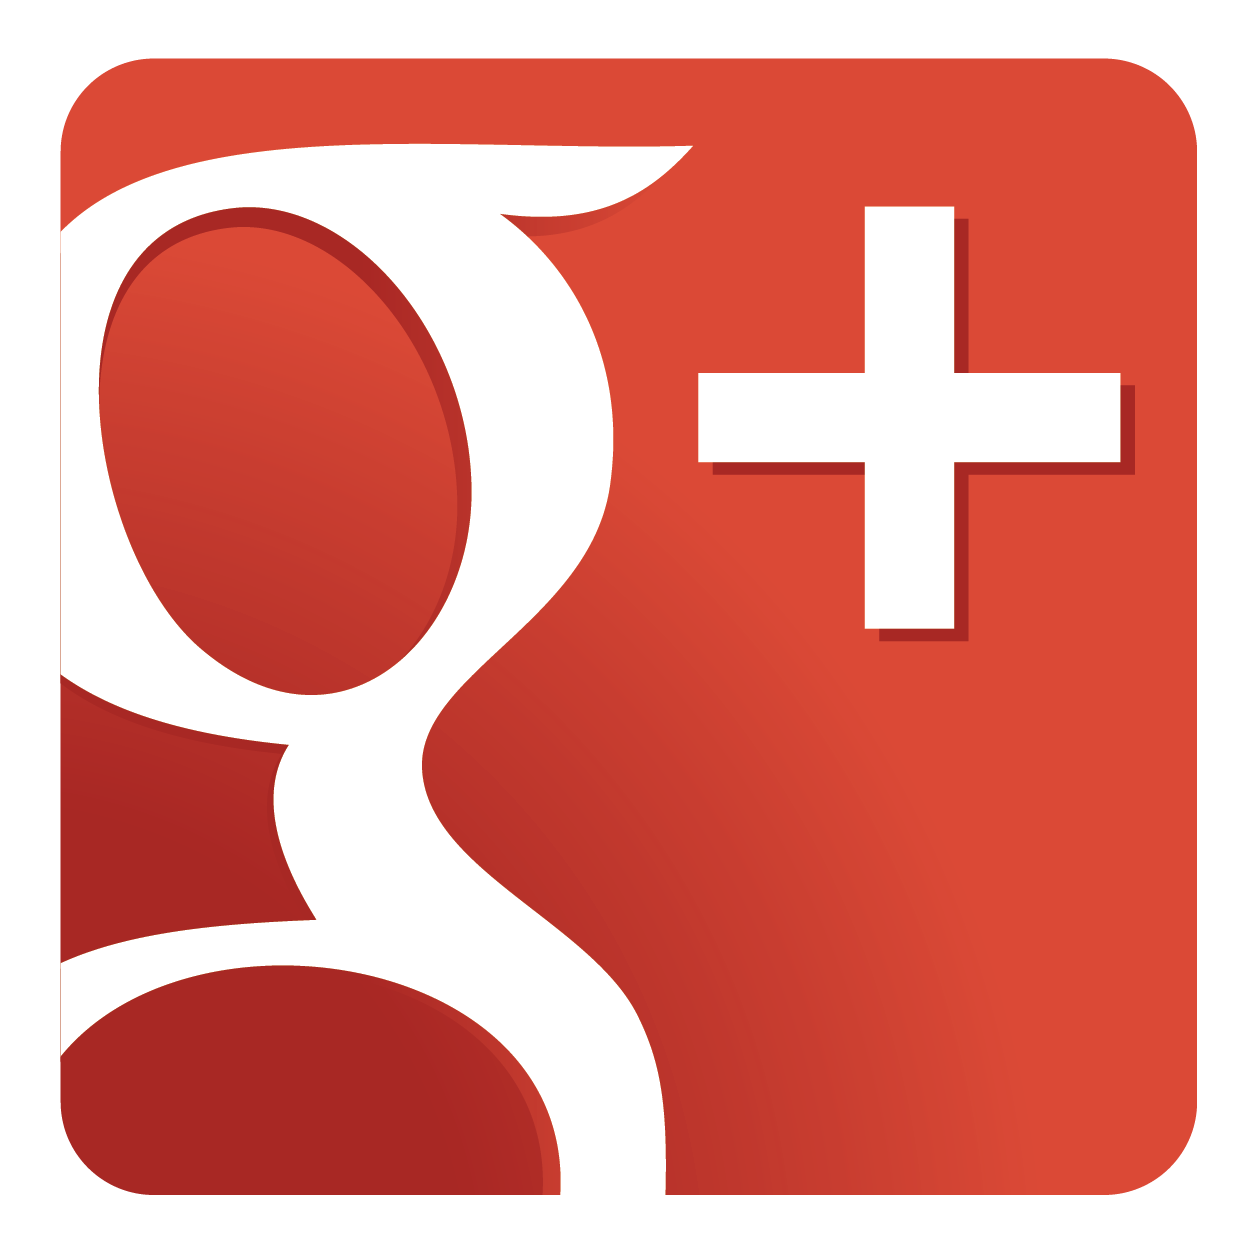 Google Plus Logo Image #1255 - A Plus, Transparent background PNG HD thumbnail